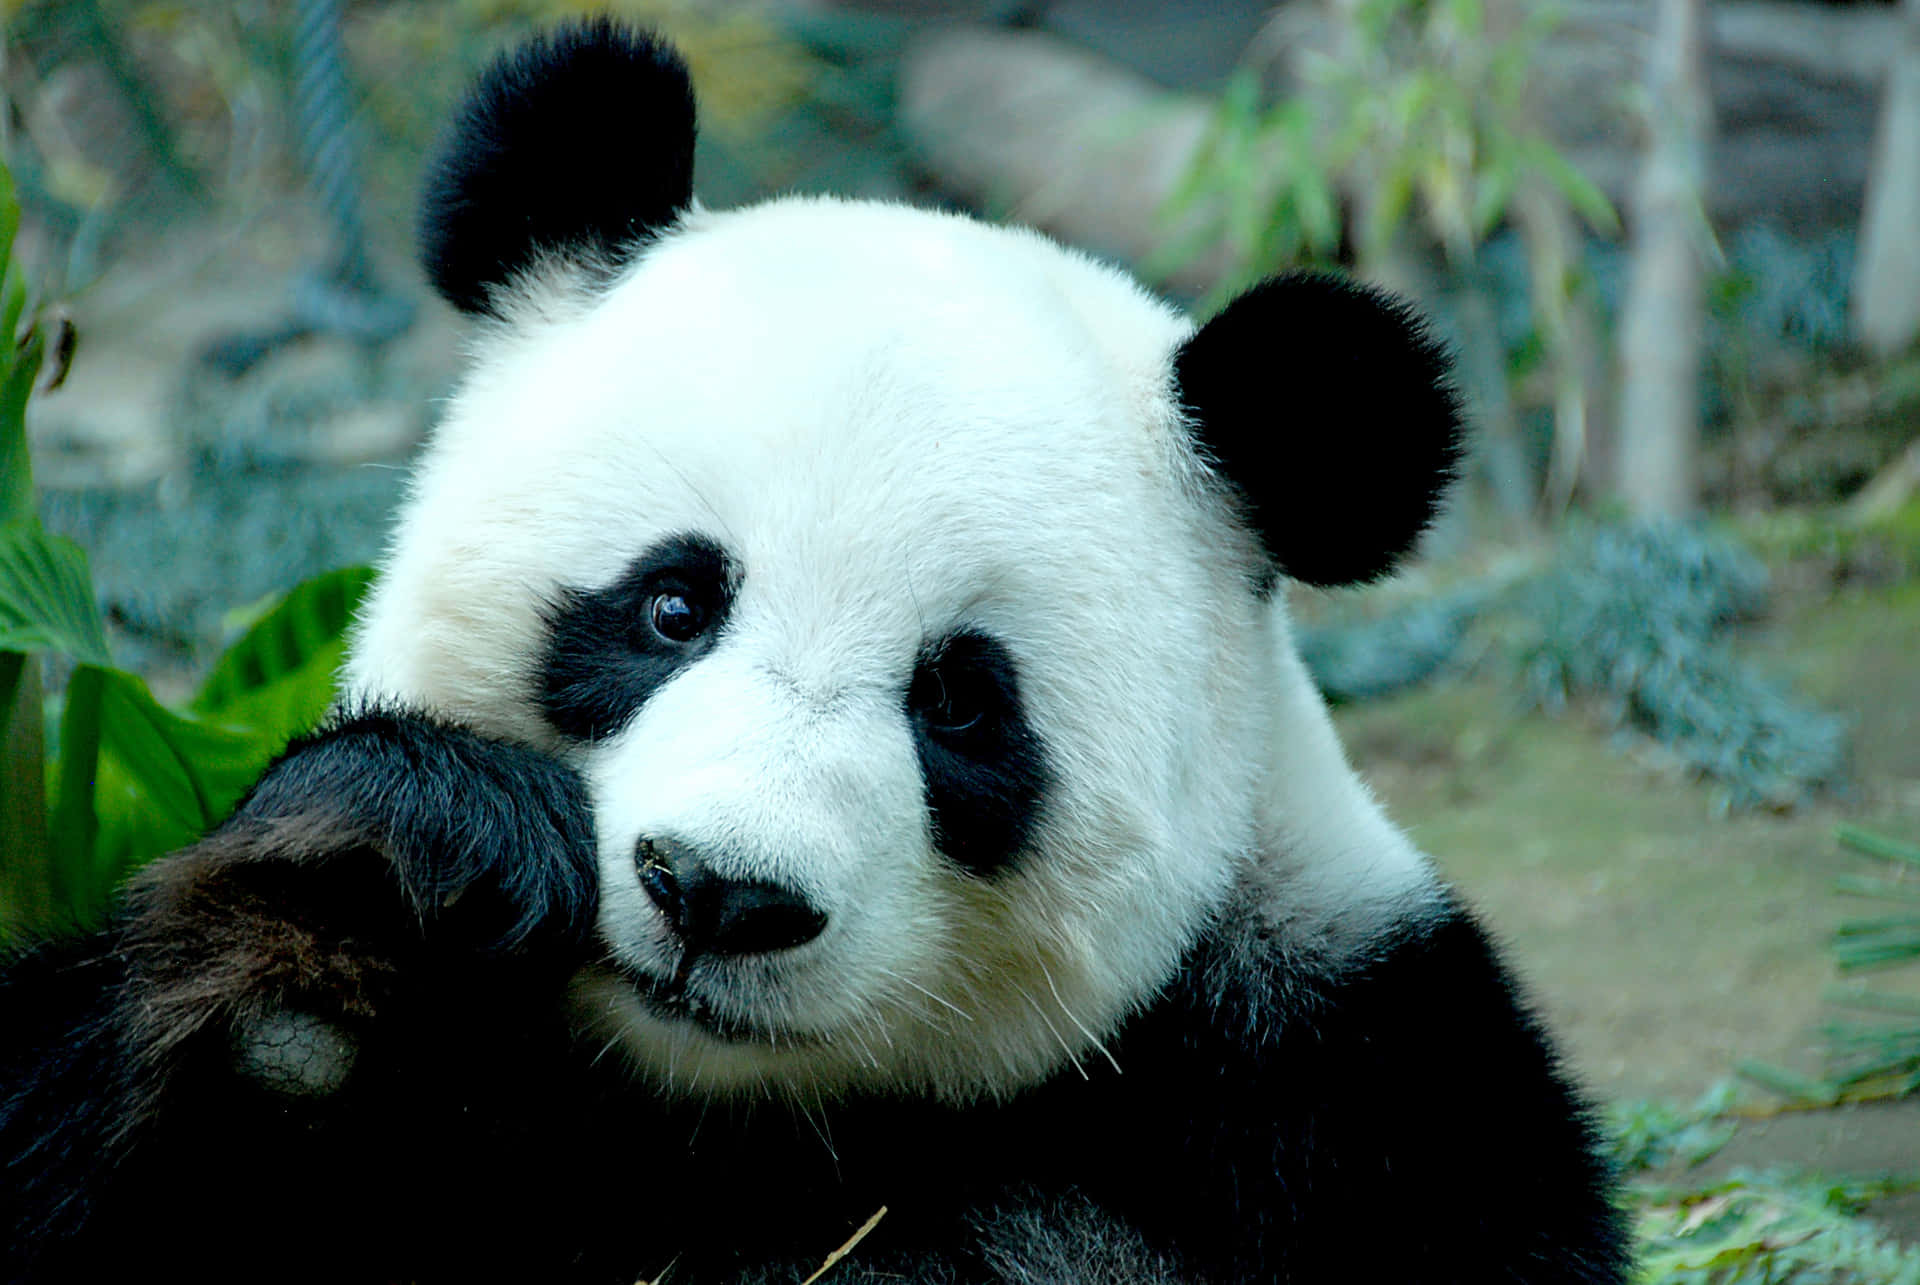 Billedeaf En Nuttet Baby Panda, Der Hænger Ud I Sit Naturlige Miljø.